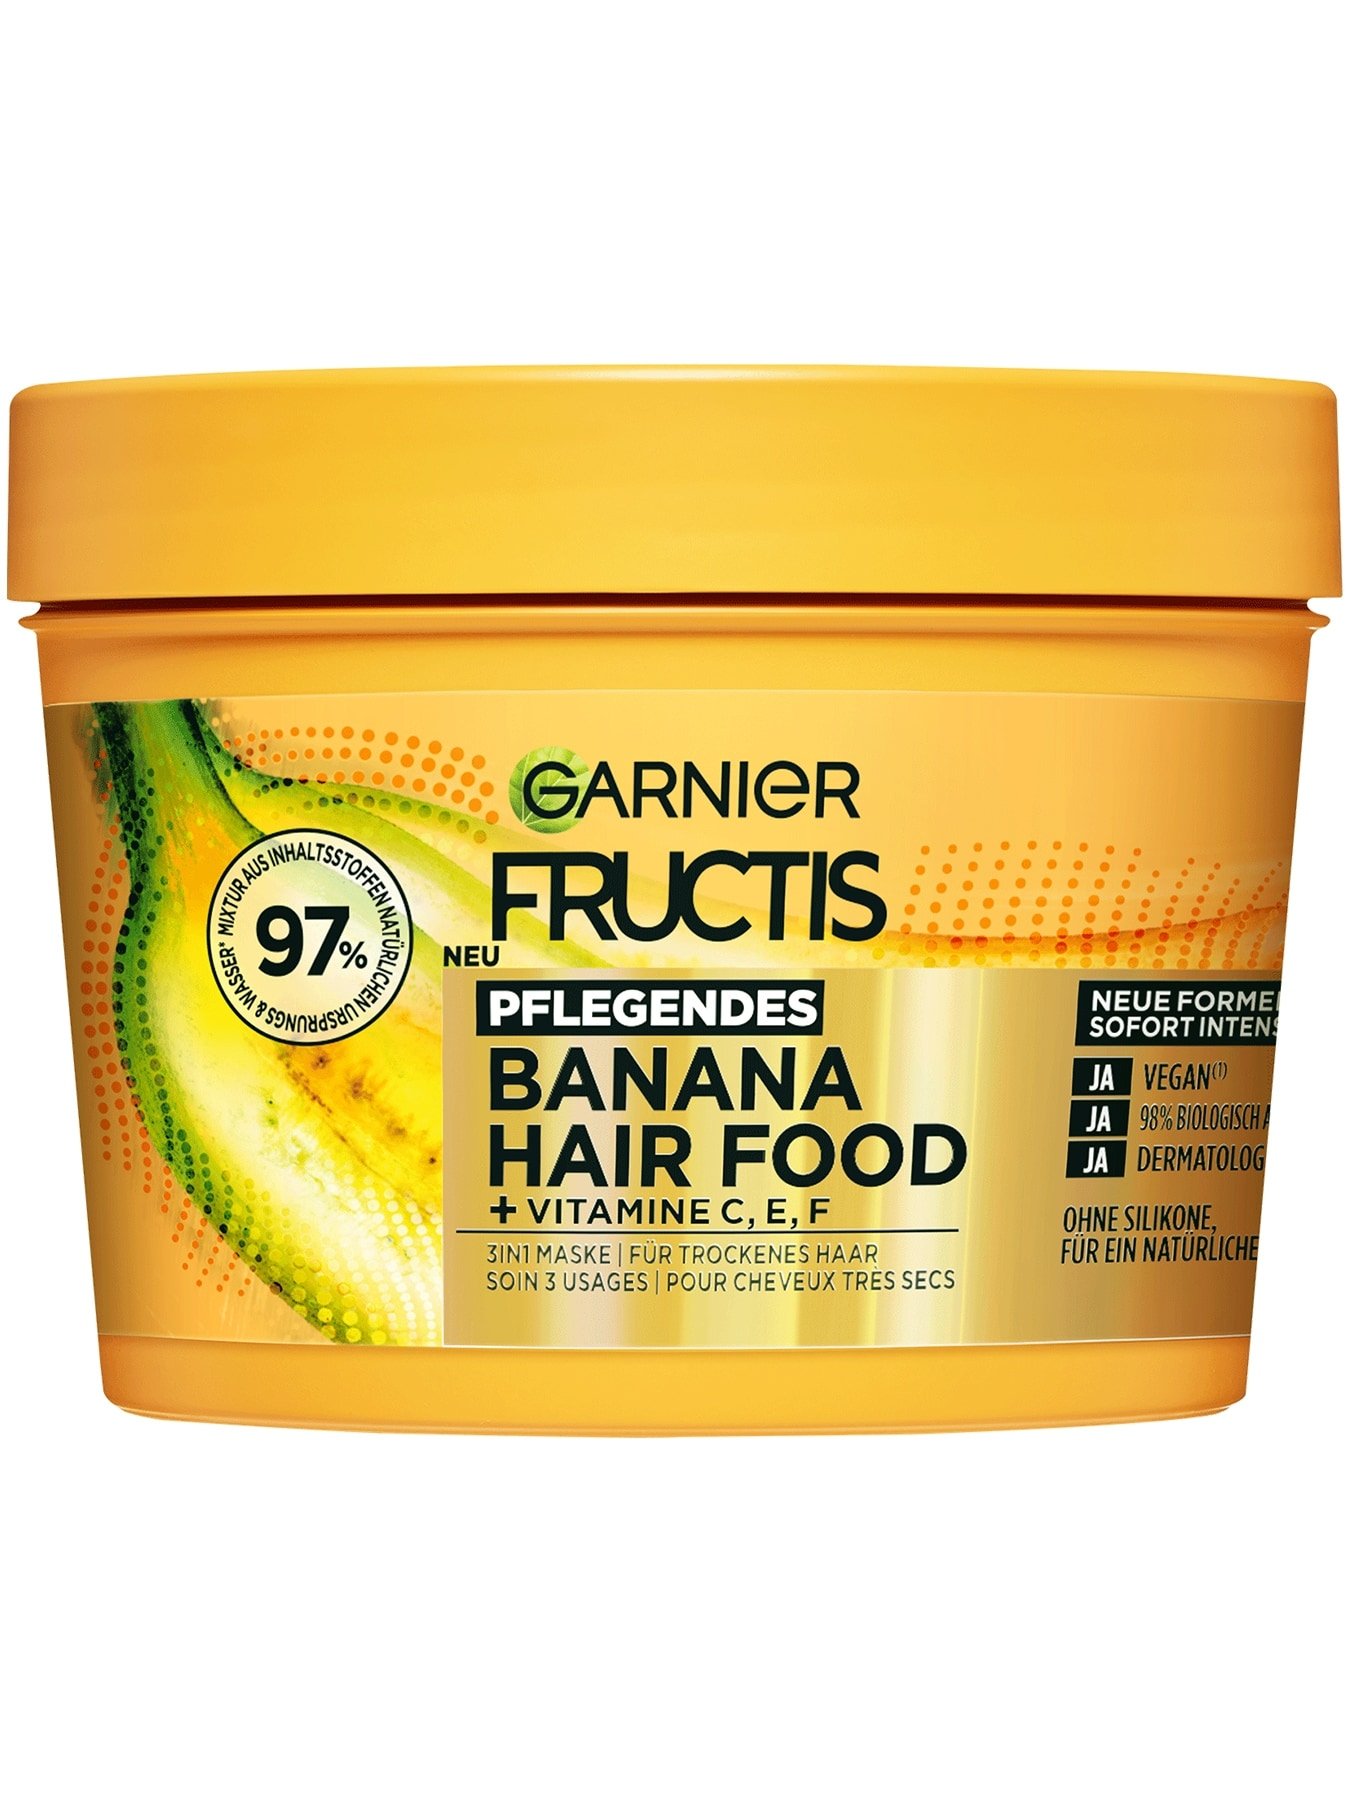 Fructis 3in1 Maske für trockenes Haar angereichert mit Banane - Produktabbildung